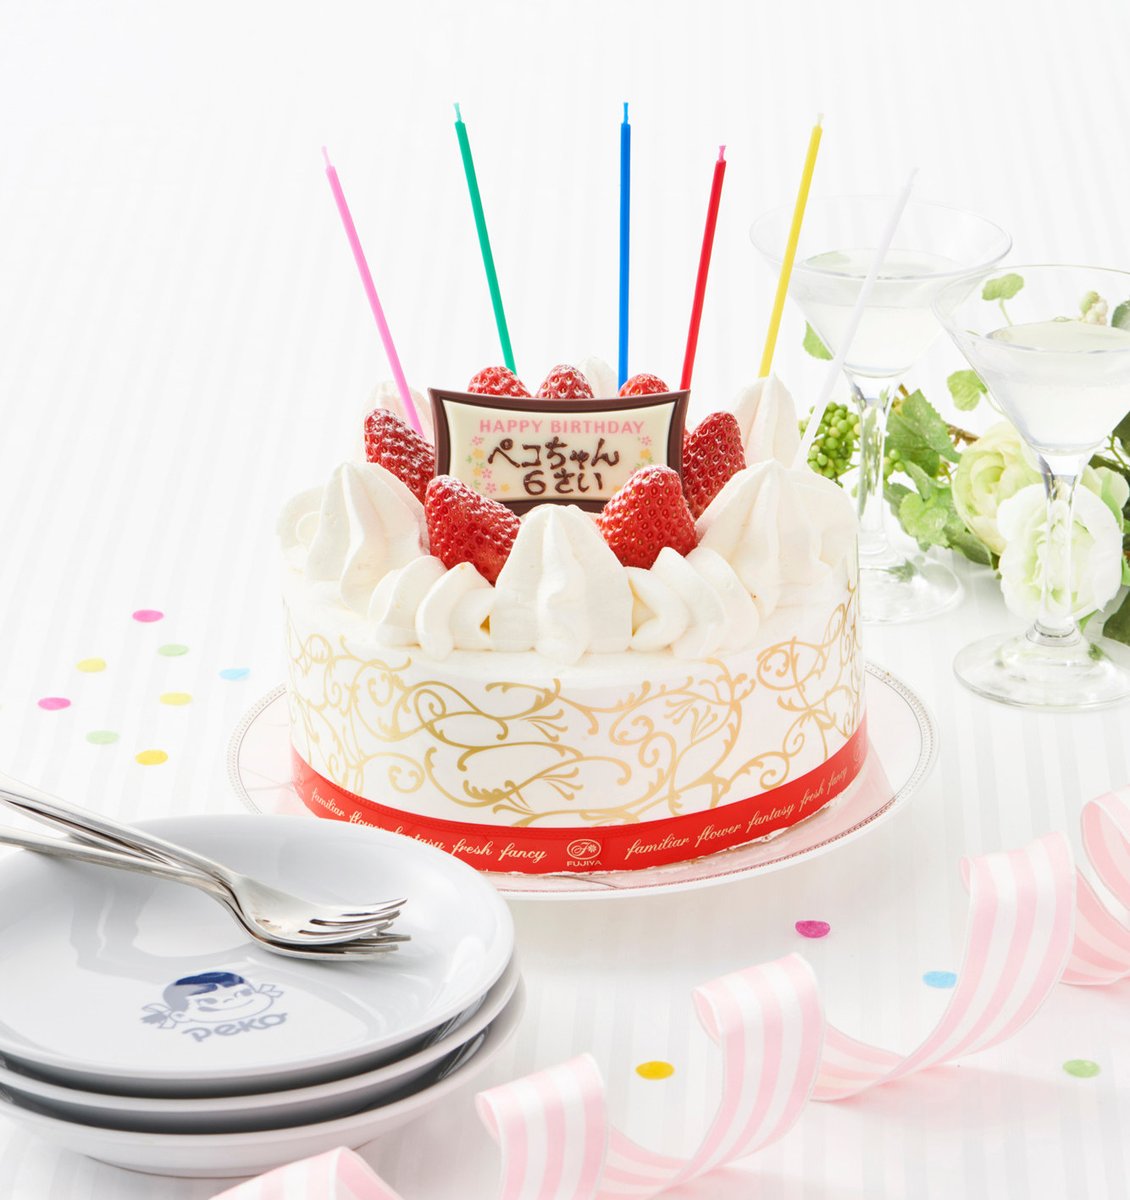 ワードローブ 上昇 現実 不二家 ケーキ 誕生 日 ケーキ Morinoshizuku Jp